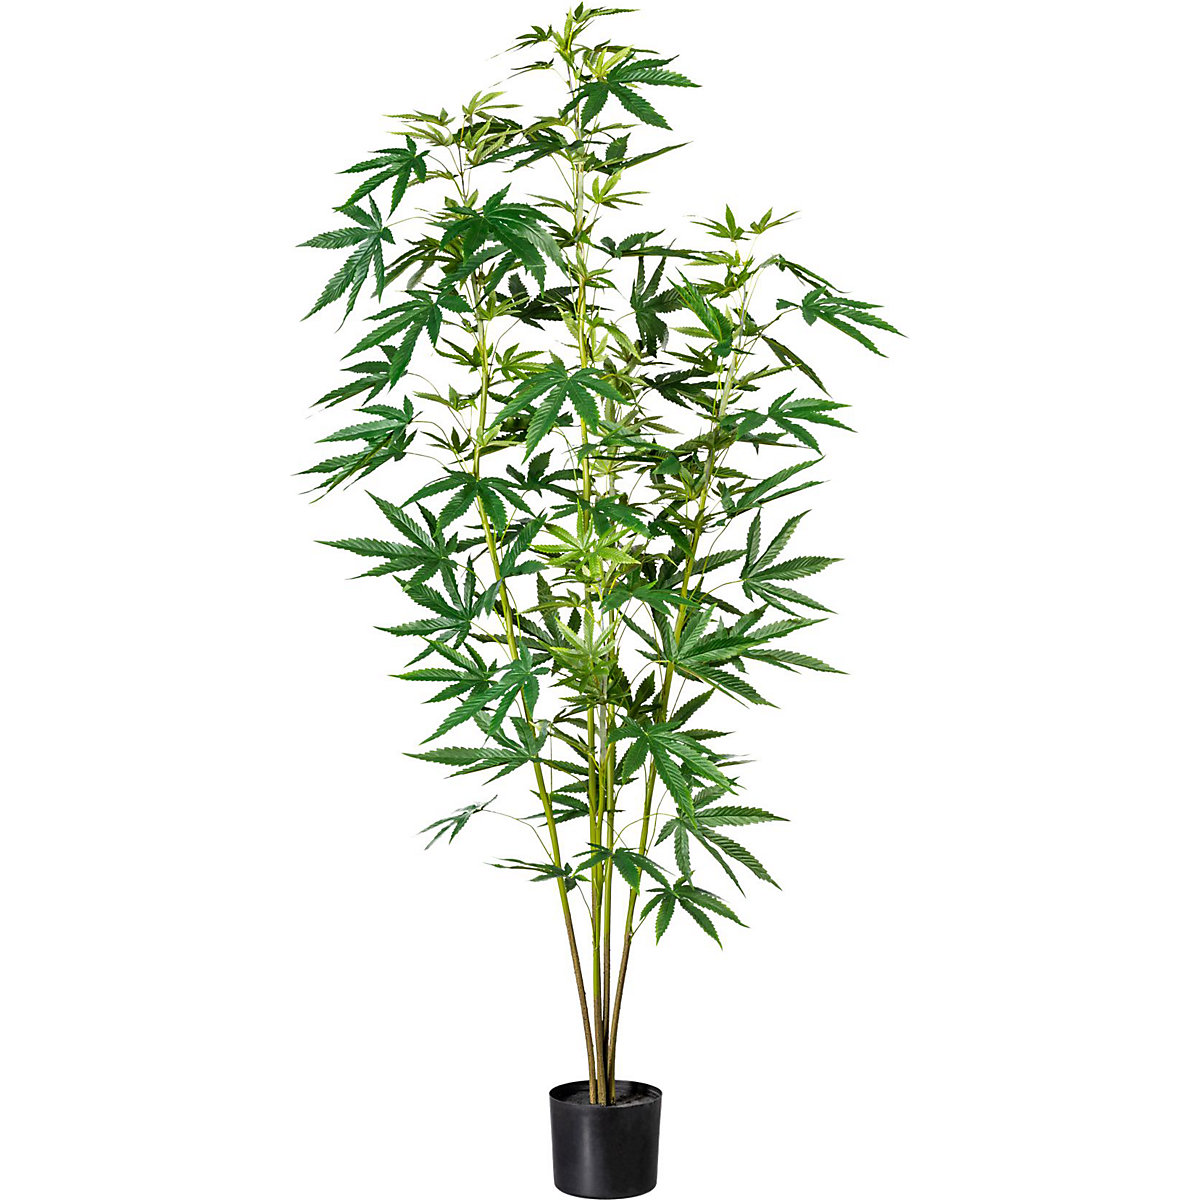 Plantă de cânepă decorativă, în ghiveci din plastic, înălțime cca. 1500 mm